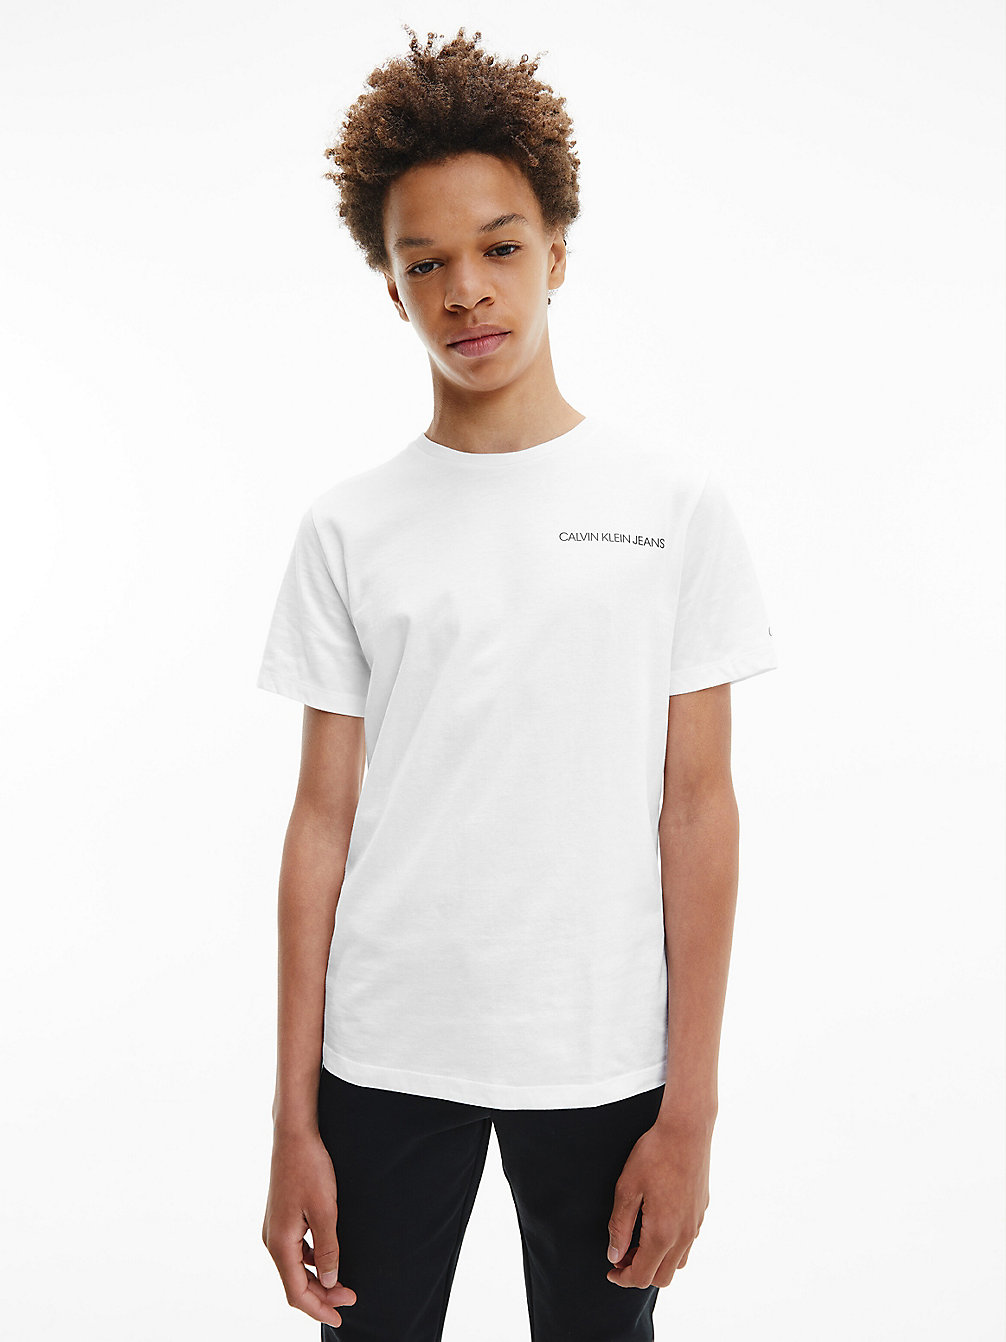 BRIGHT WHITE T-Shirt Van Biologisch Katoen undefined boys Calvin Klein